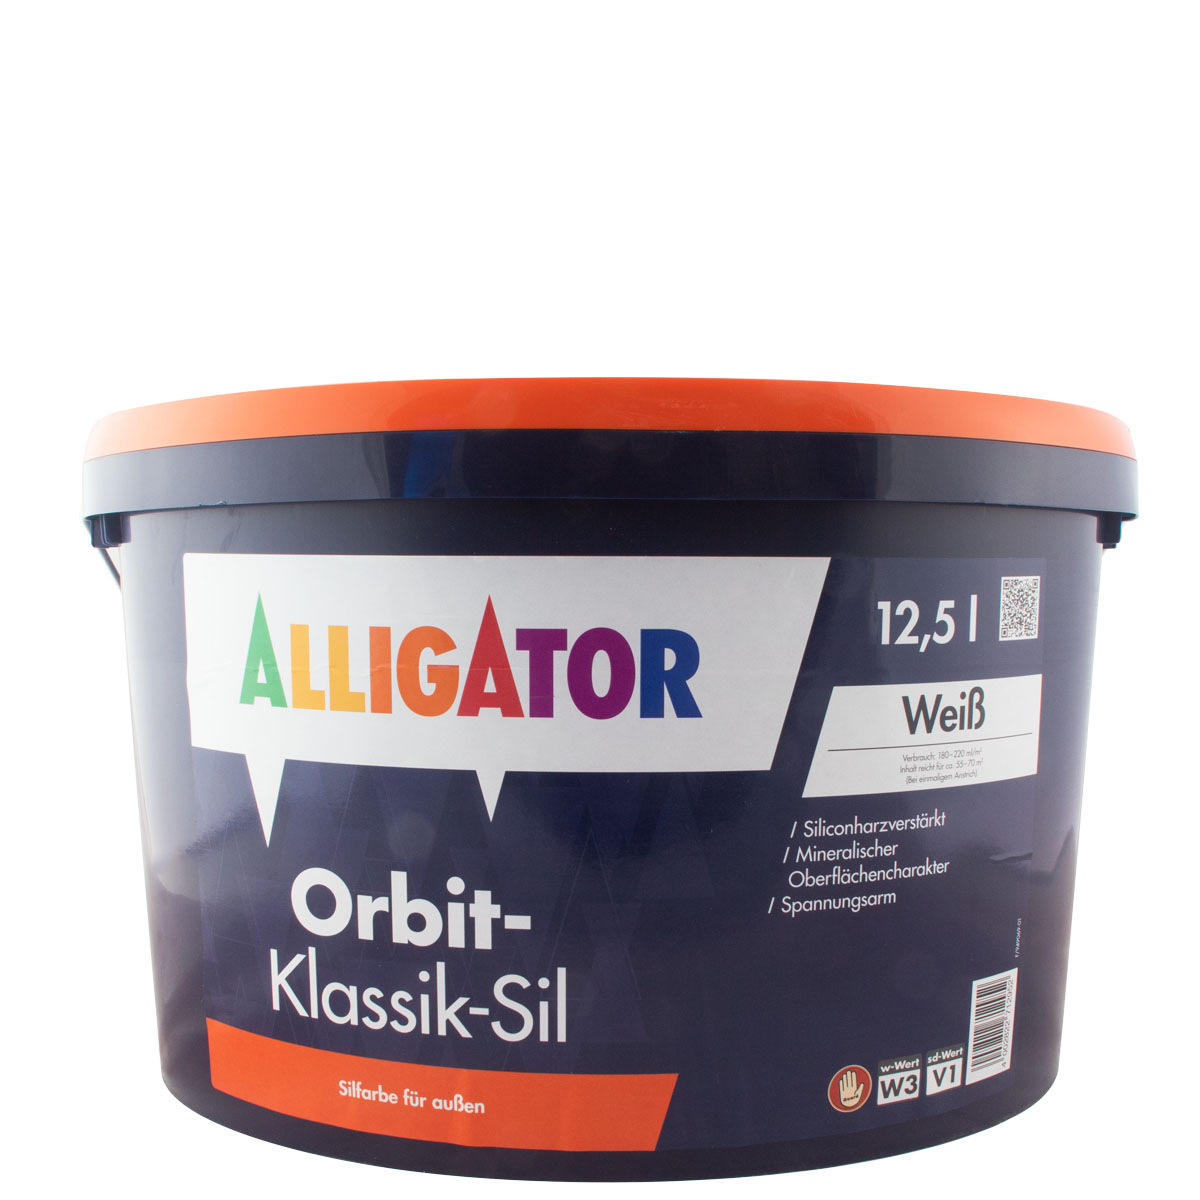 Alligator Orbit Klassik Sil 12,5L, weiß, Fassadenfarbe